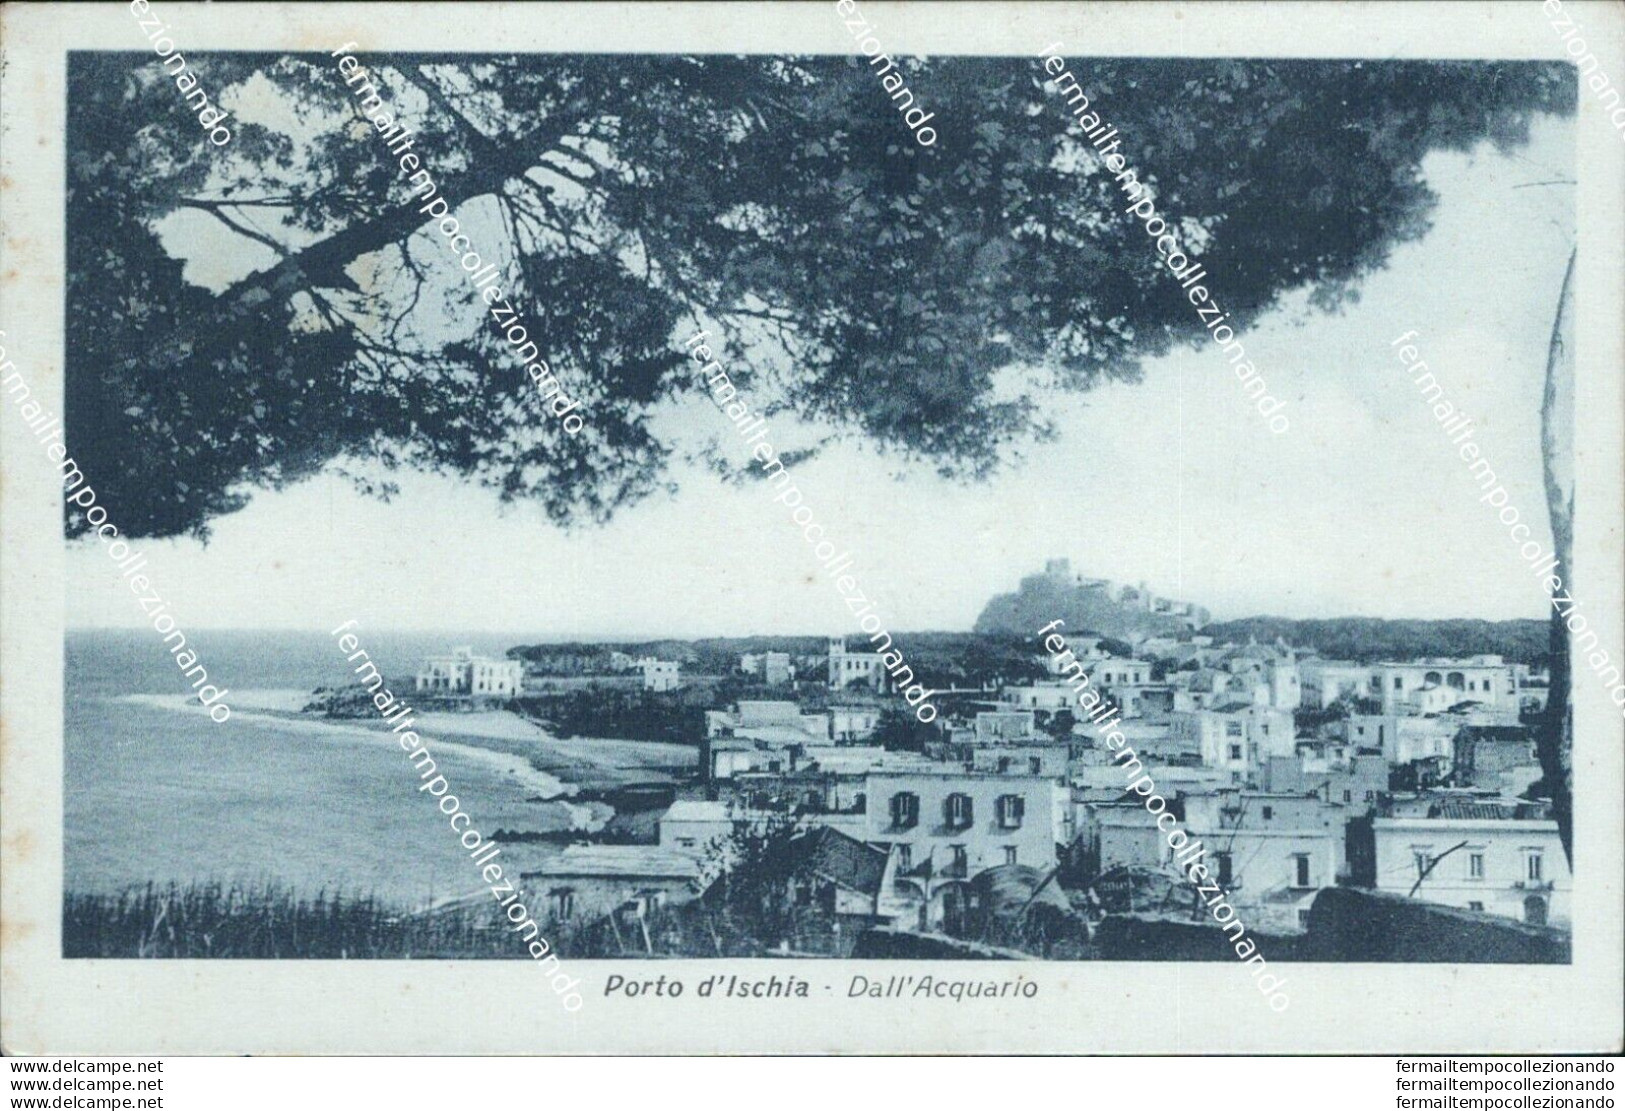 Bh192 Cartolina Porto D'ischia Dall'acquario Provincia Di Napoli - Napoli (Napels)